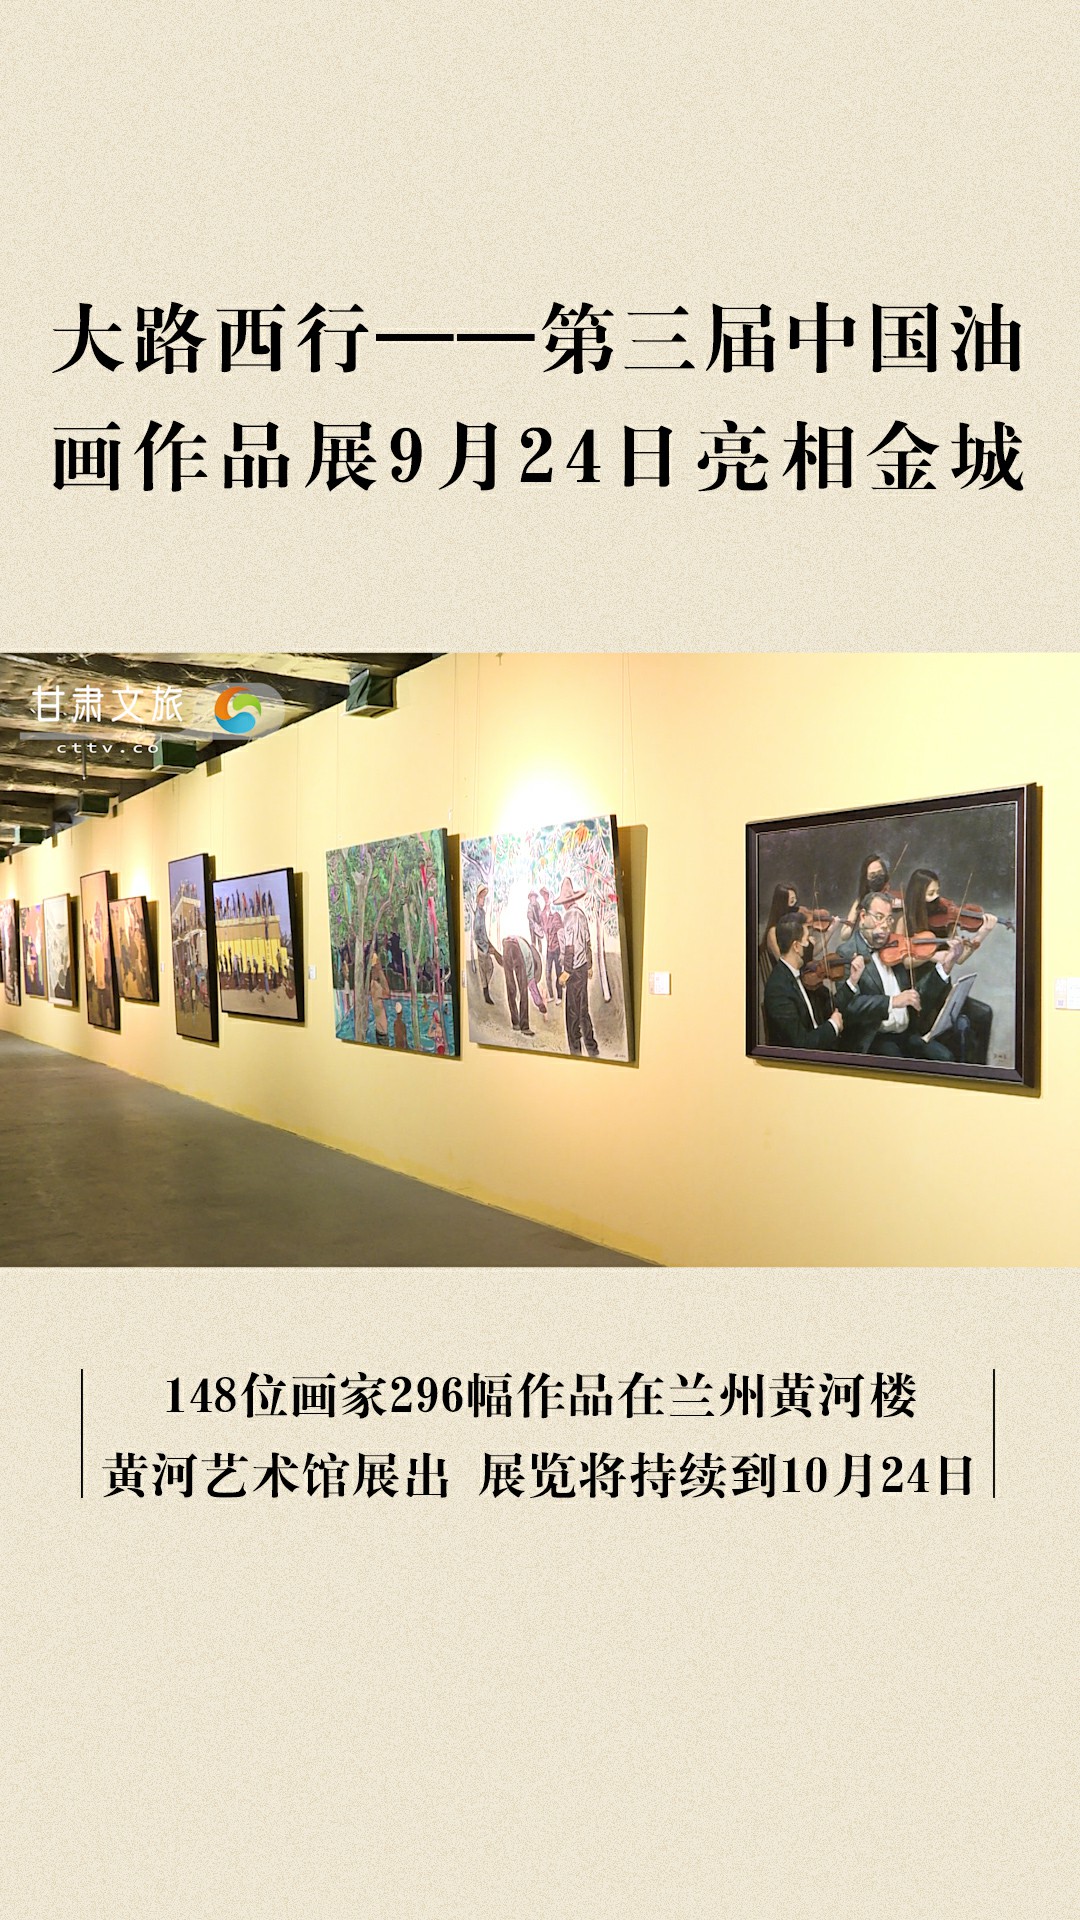 148位画家296幅作品 “大路西行——第三届中国油画作品展”亮相金城